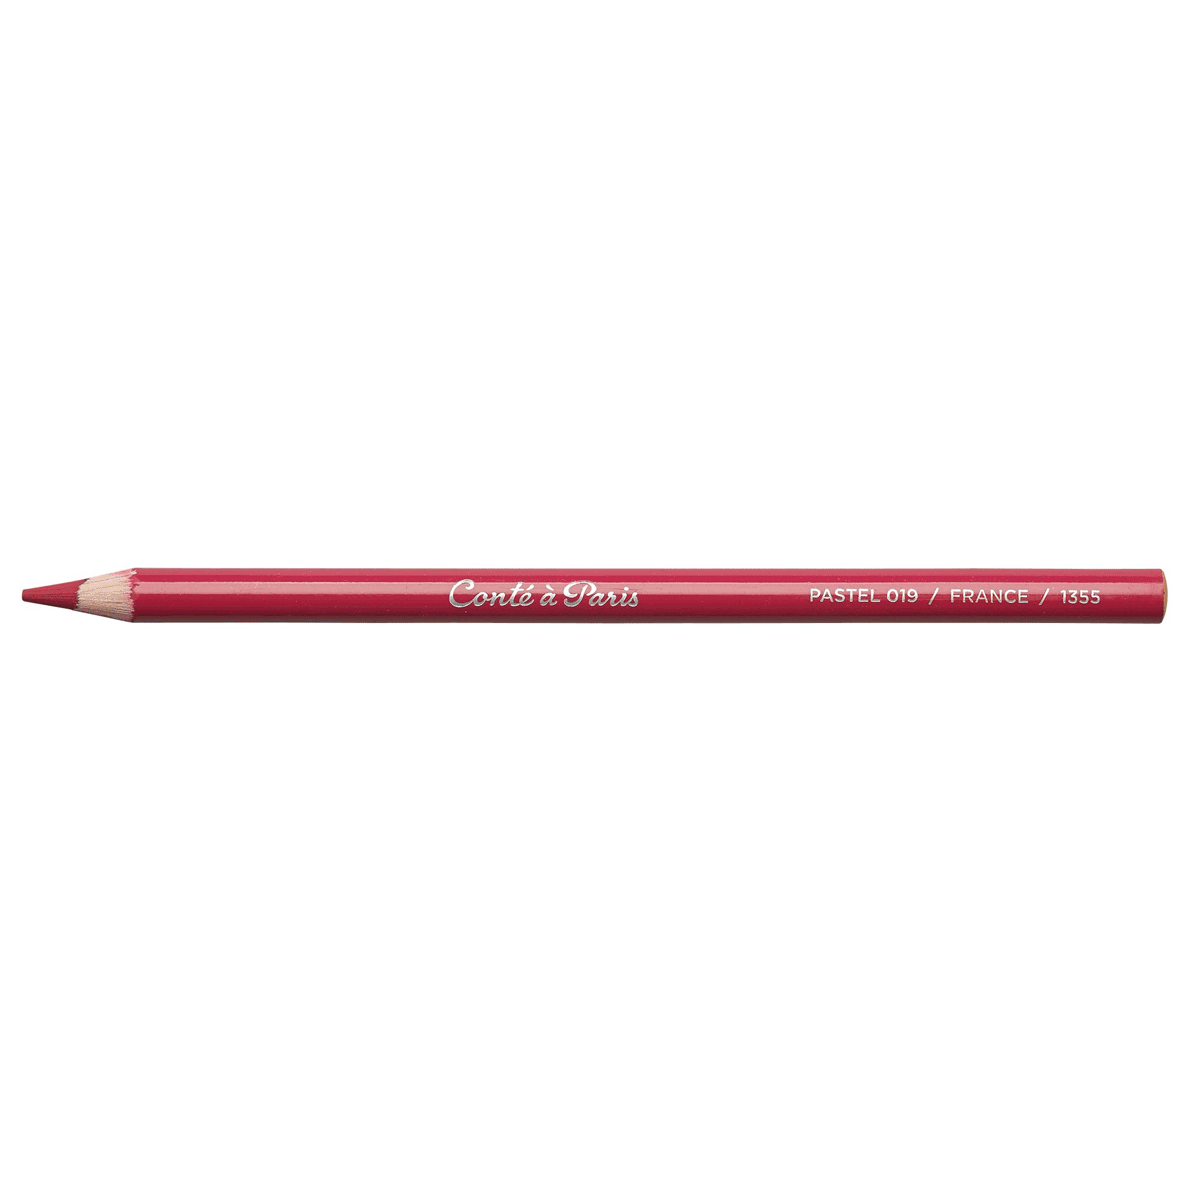 Conte Pastel Pencil - Purple